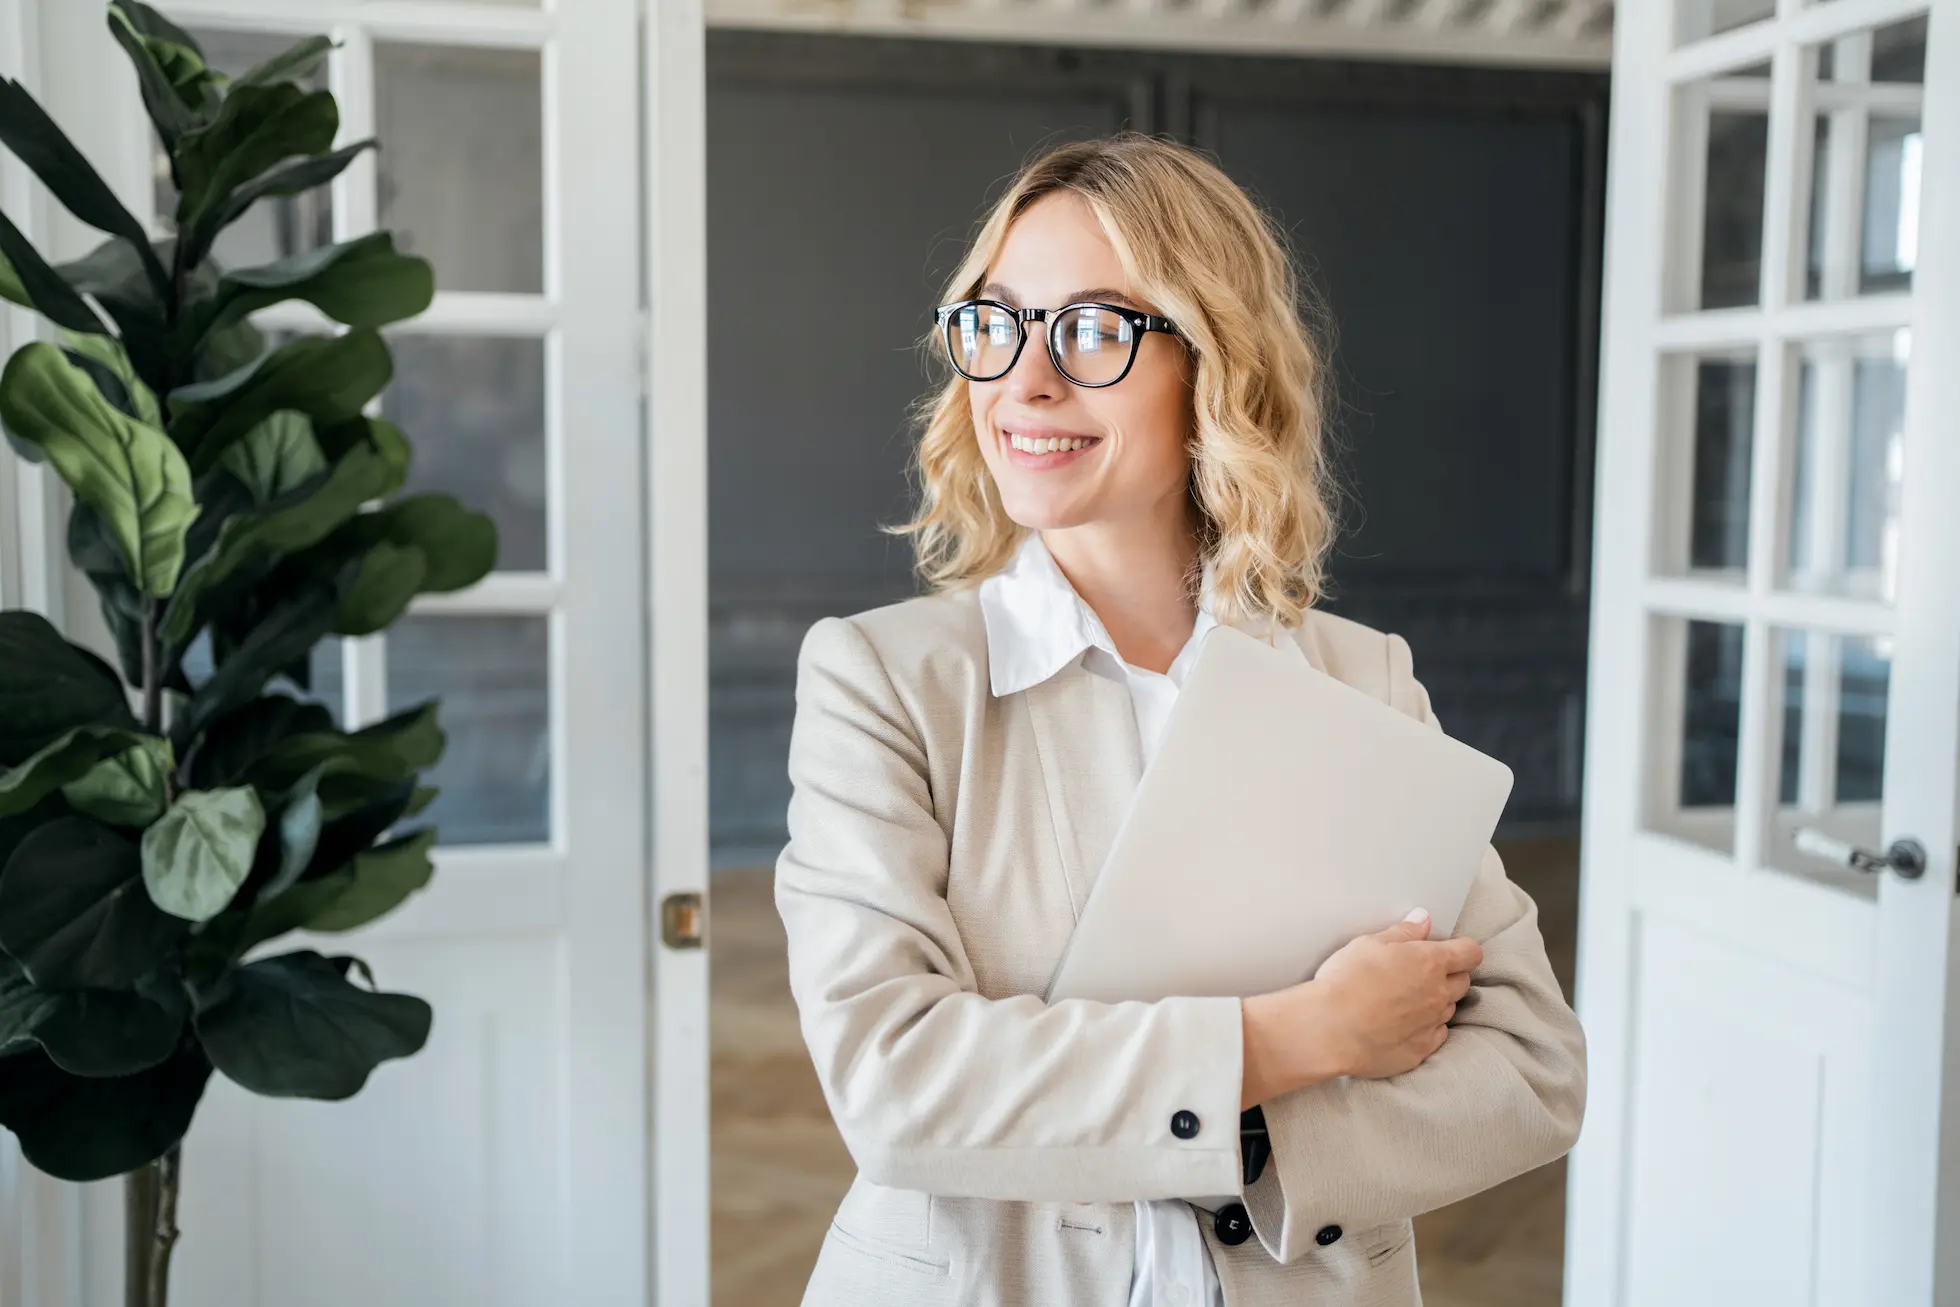 Fröhliche Geschäftsfrau in einem beigen Blazer, die eine Aktentasche hält und optimistisch zur Seite blickt, in einem hellen Büro mit einer grossen Zimmerpflanze neben einer Glastür.